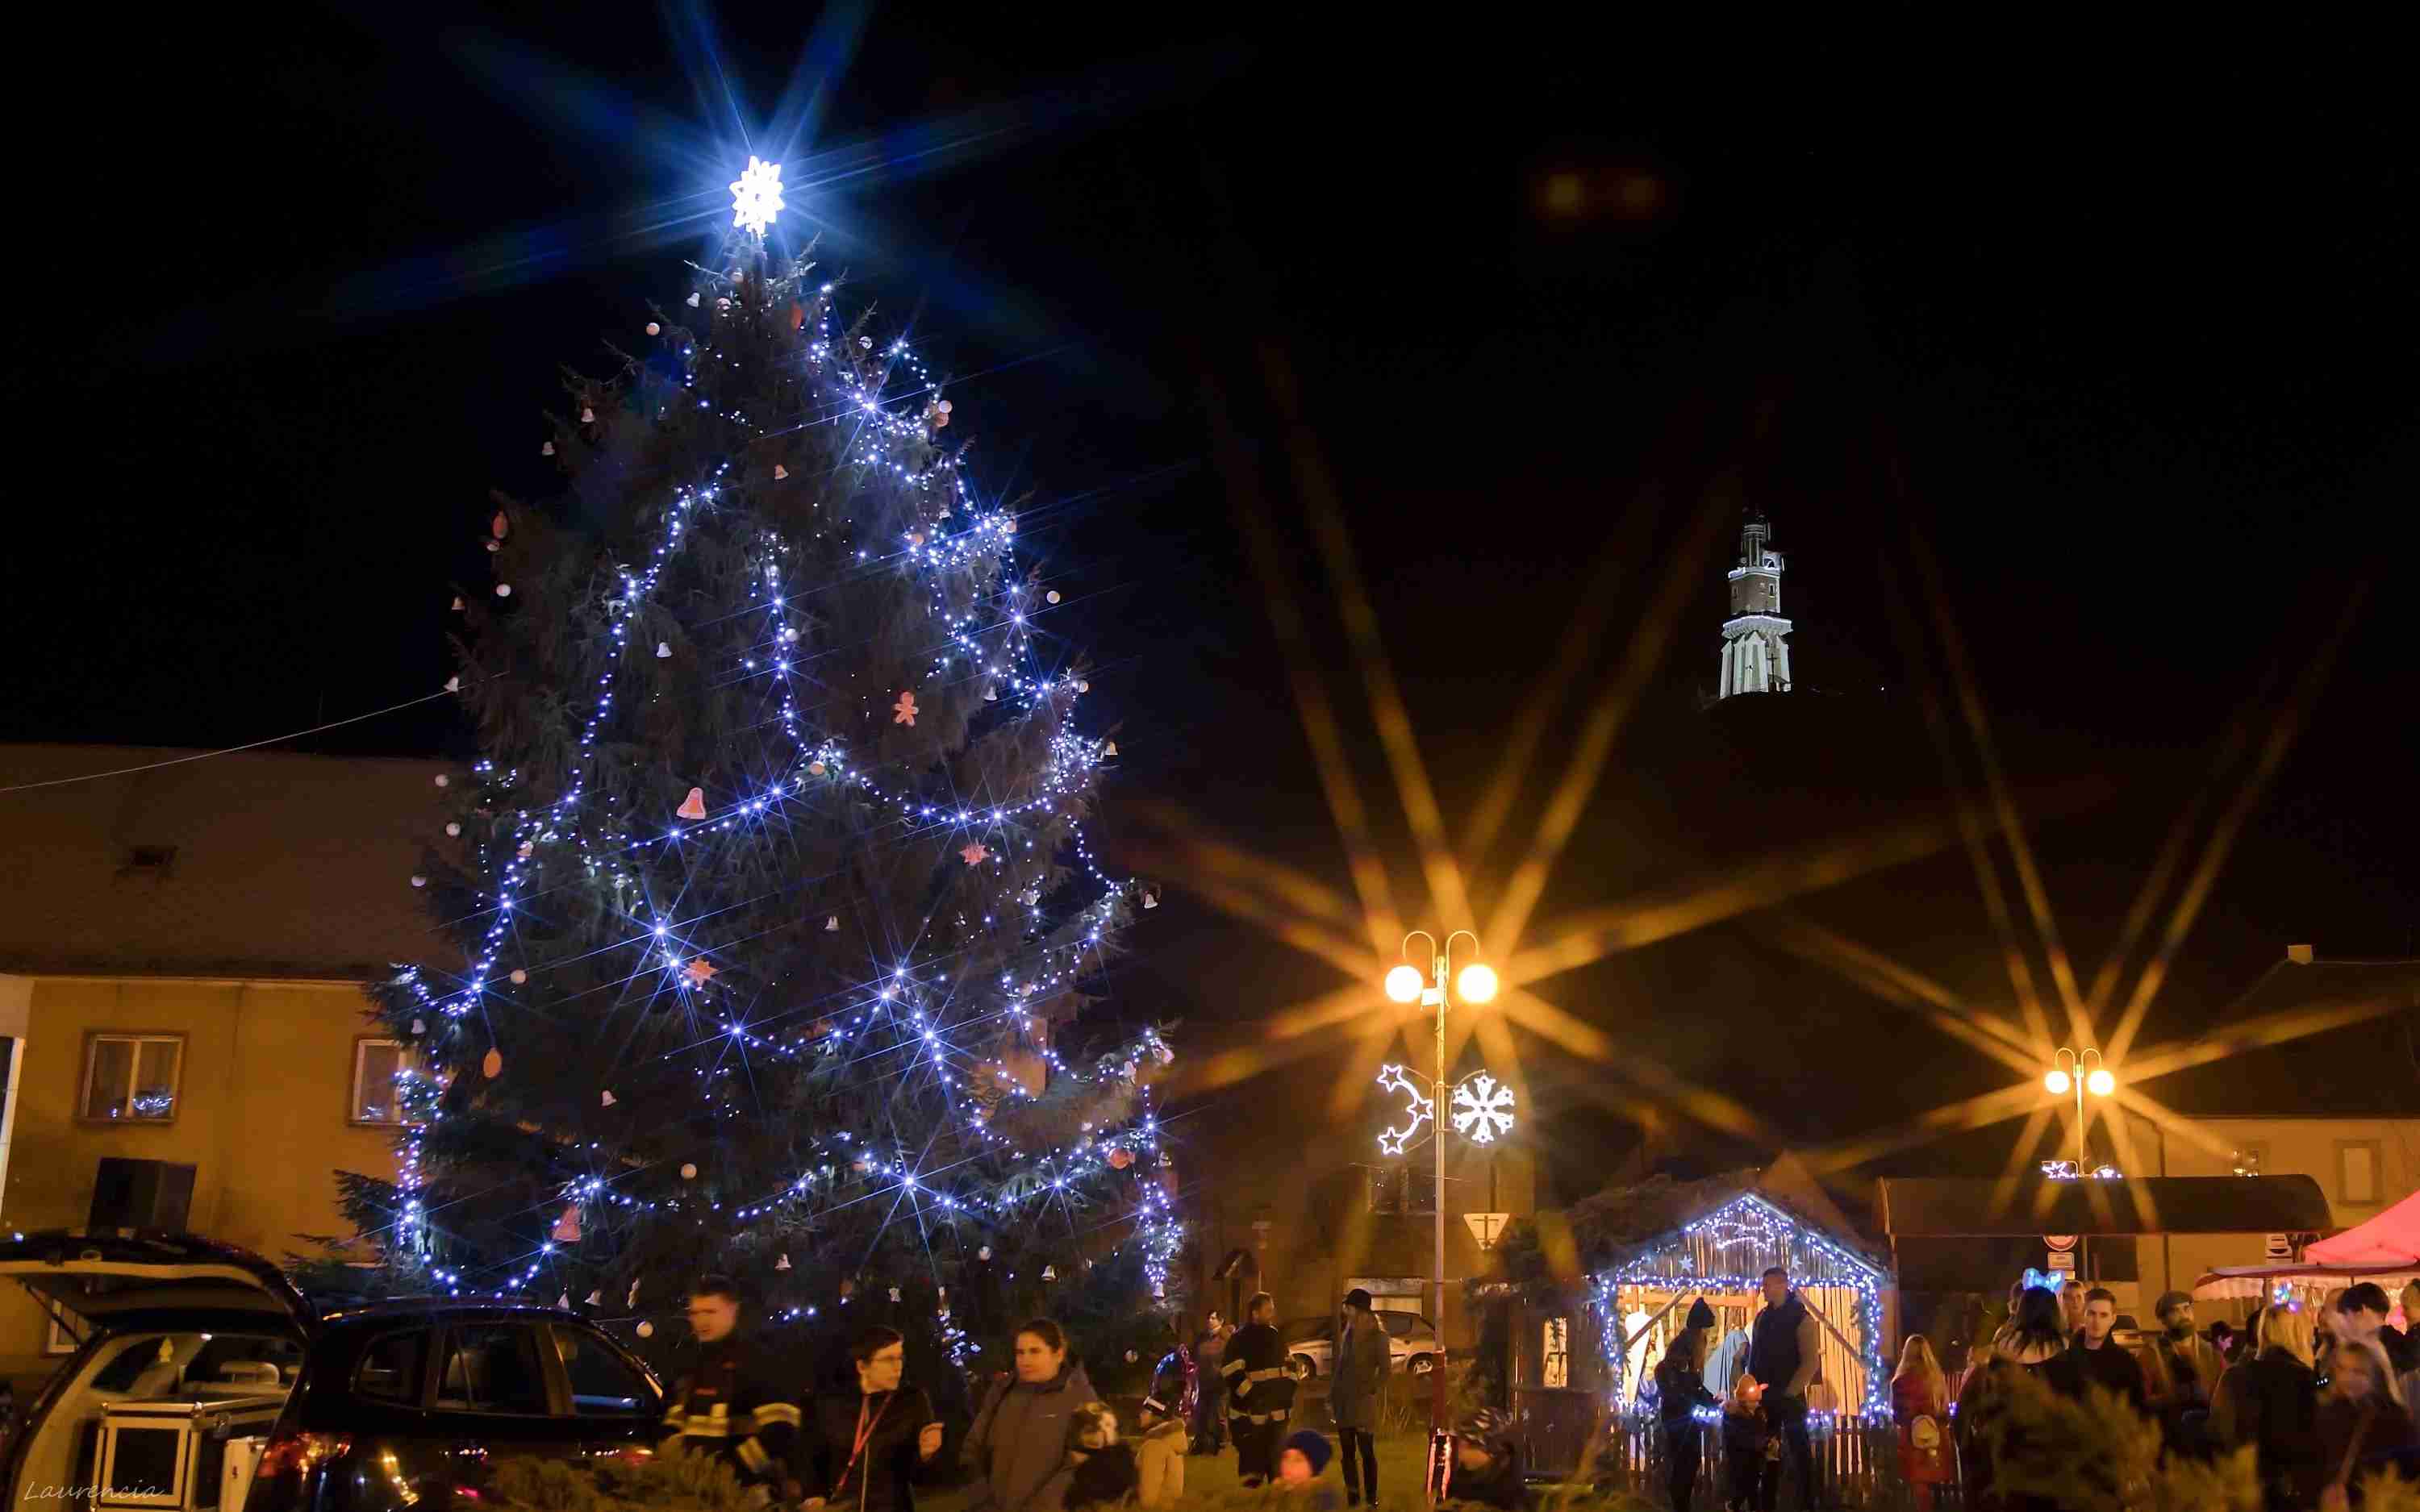 OBRAZEM: O víkendu se ve většině měst a obcí na Lounsku slavnostně rozsvítily vánoční stromy. Podívejte se, jak to vypadalo